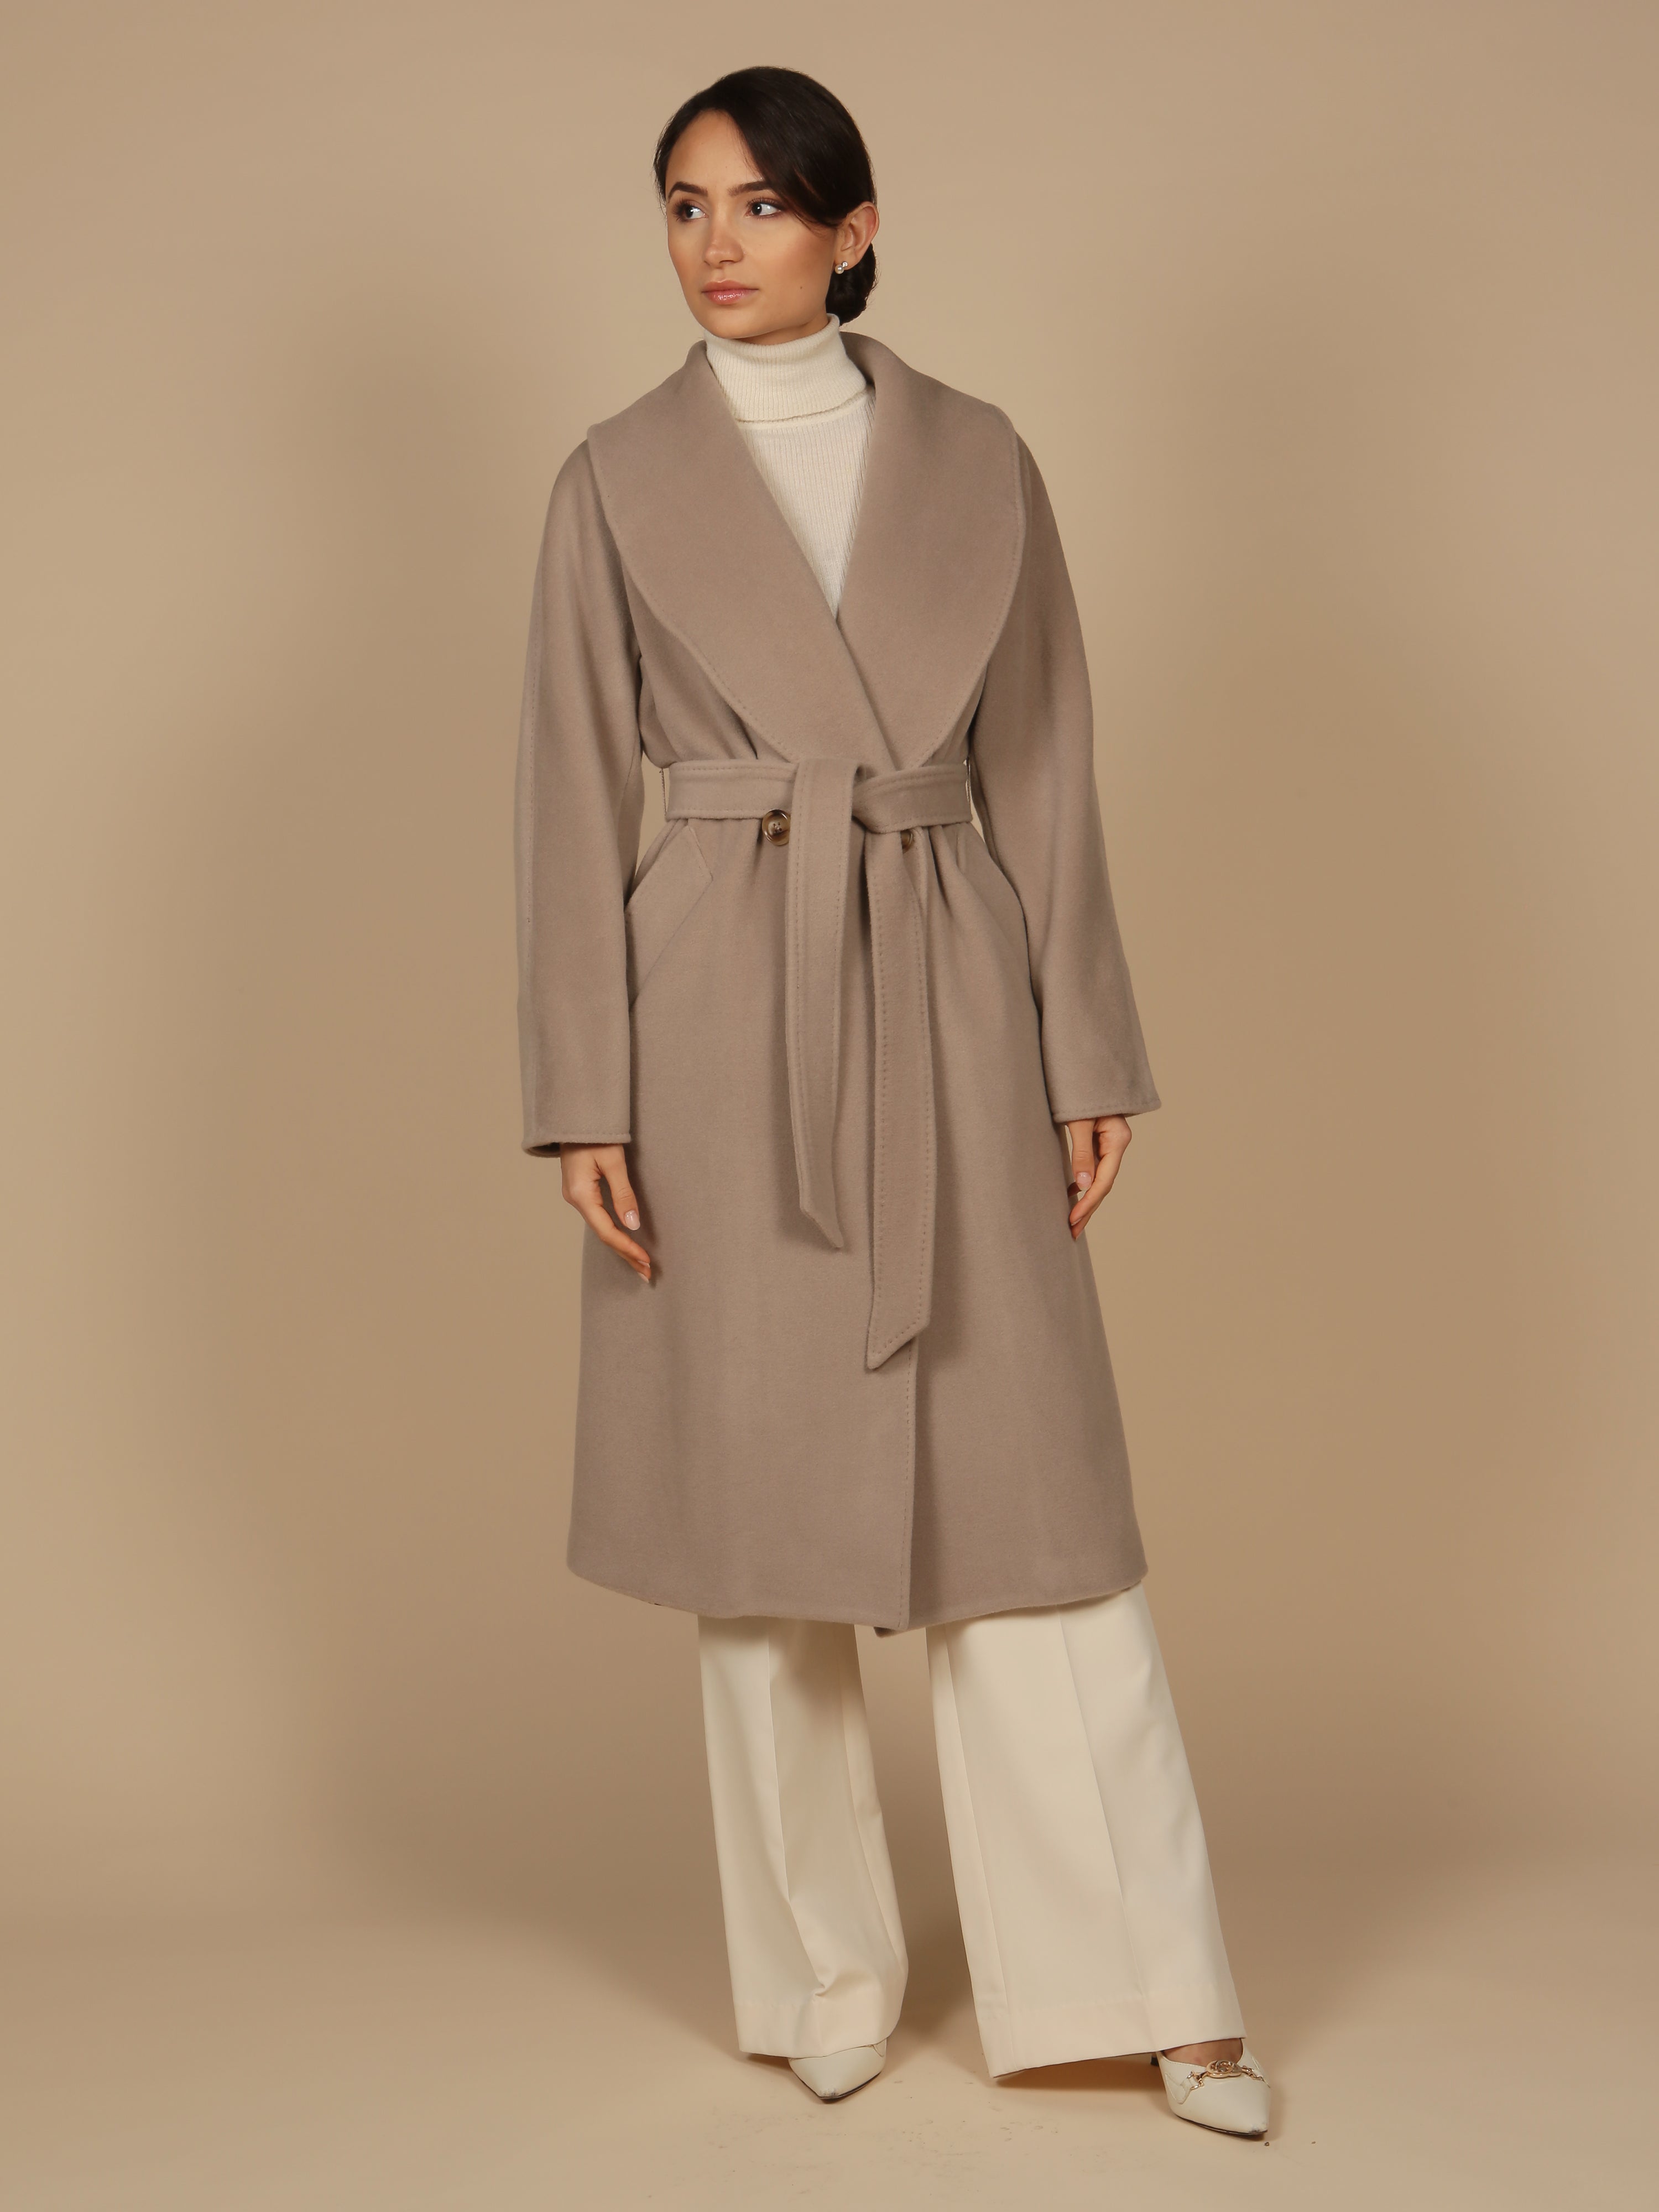 ‘Hepburn’ Italian Virgin Wool and Cashmere Coat in Grigio